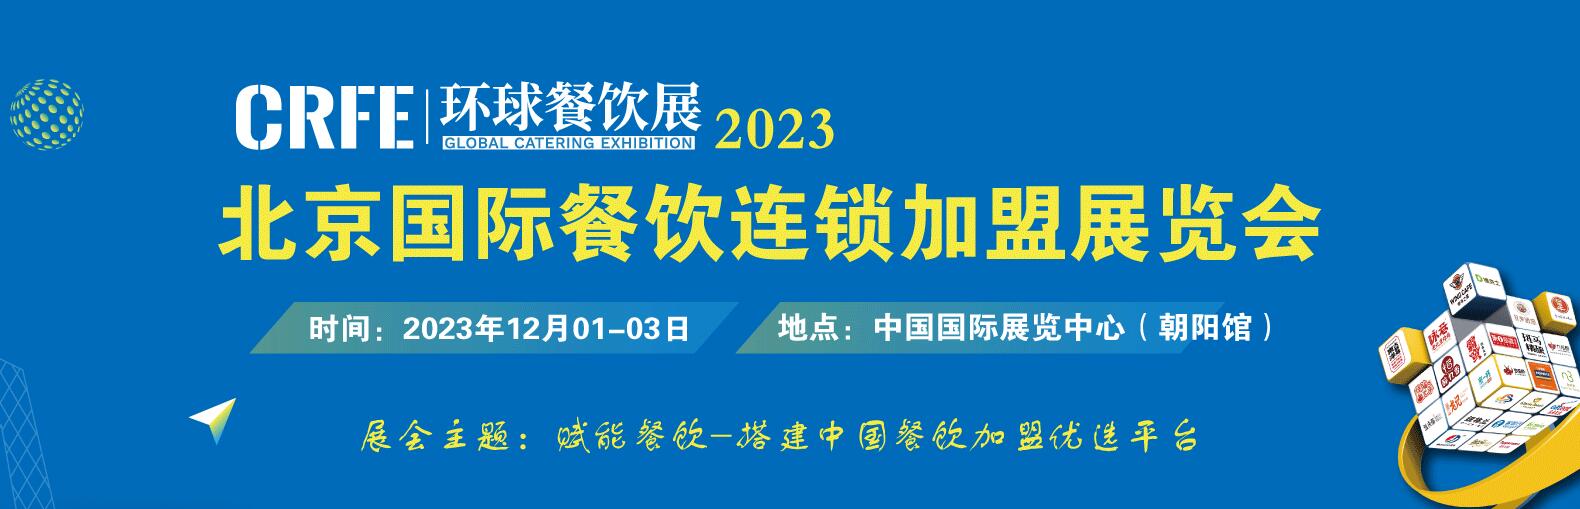 2023北京连锁加盟展览会12月开展火热报名